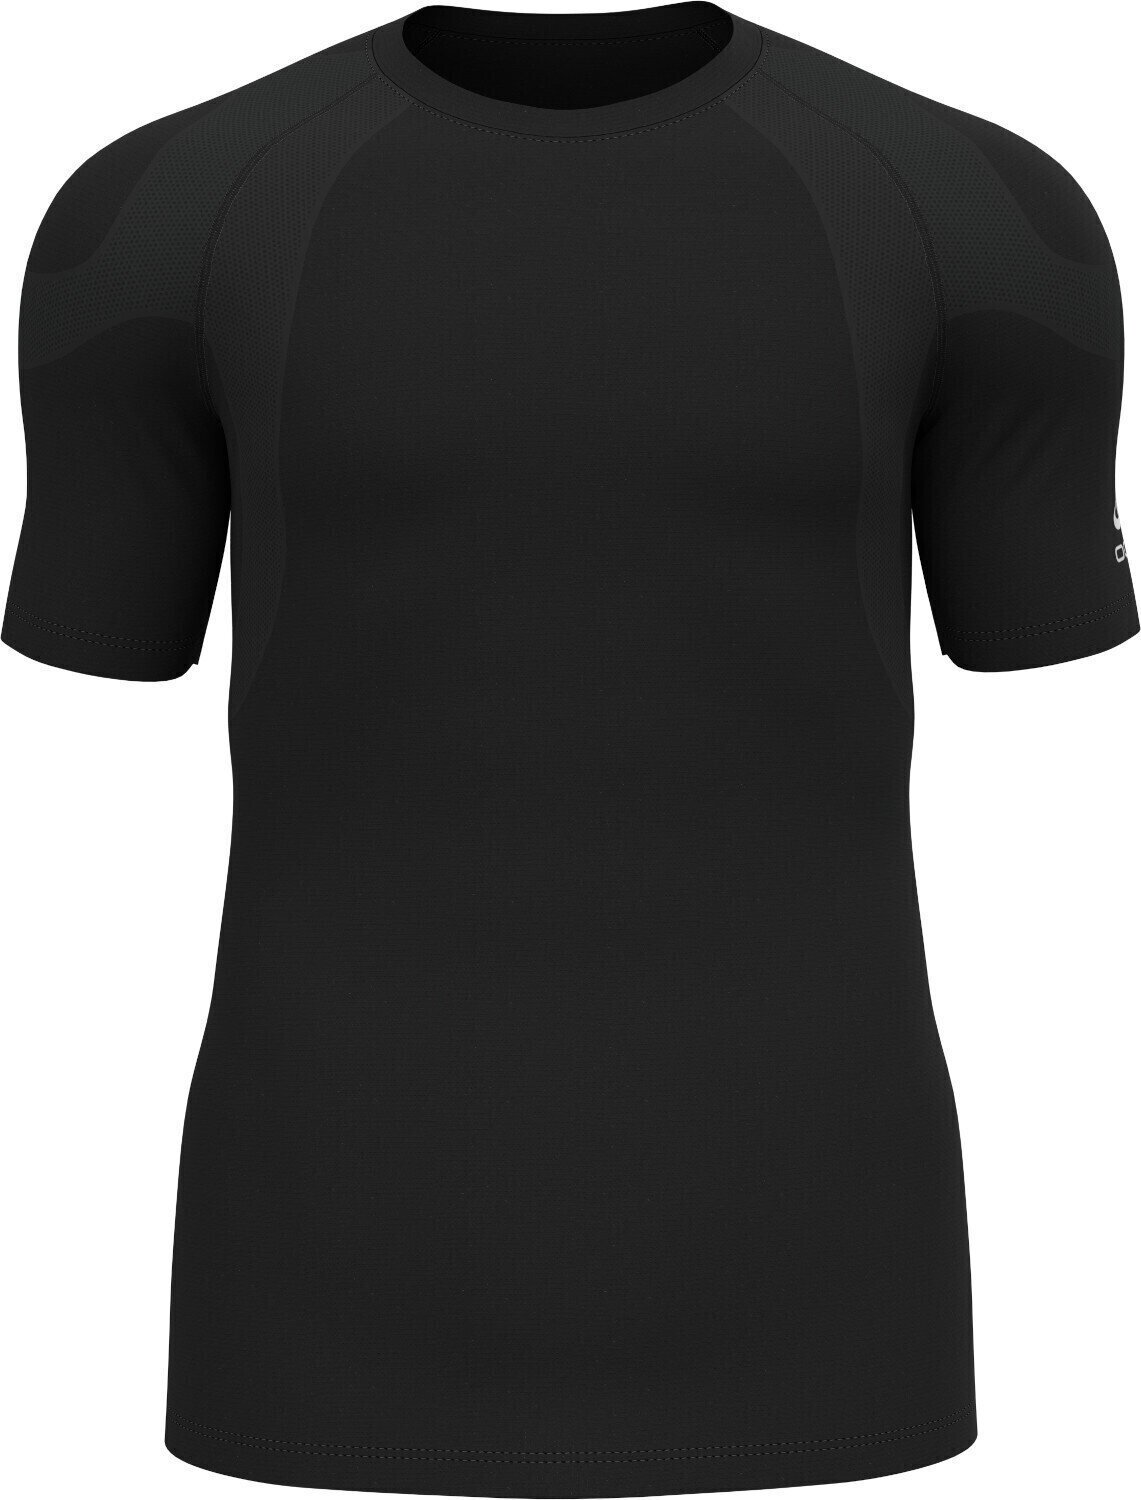 Koszulka do biegania z krótkim rękawem Odlo Active Spine 2.0 T-Shirt Black XL Koszulka do biegania z krótkim rękawem